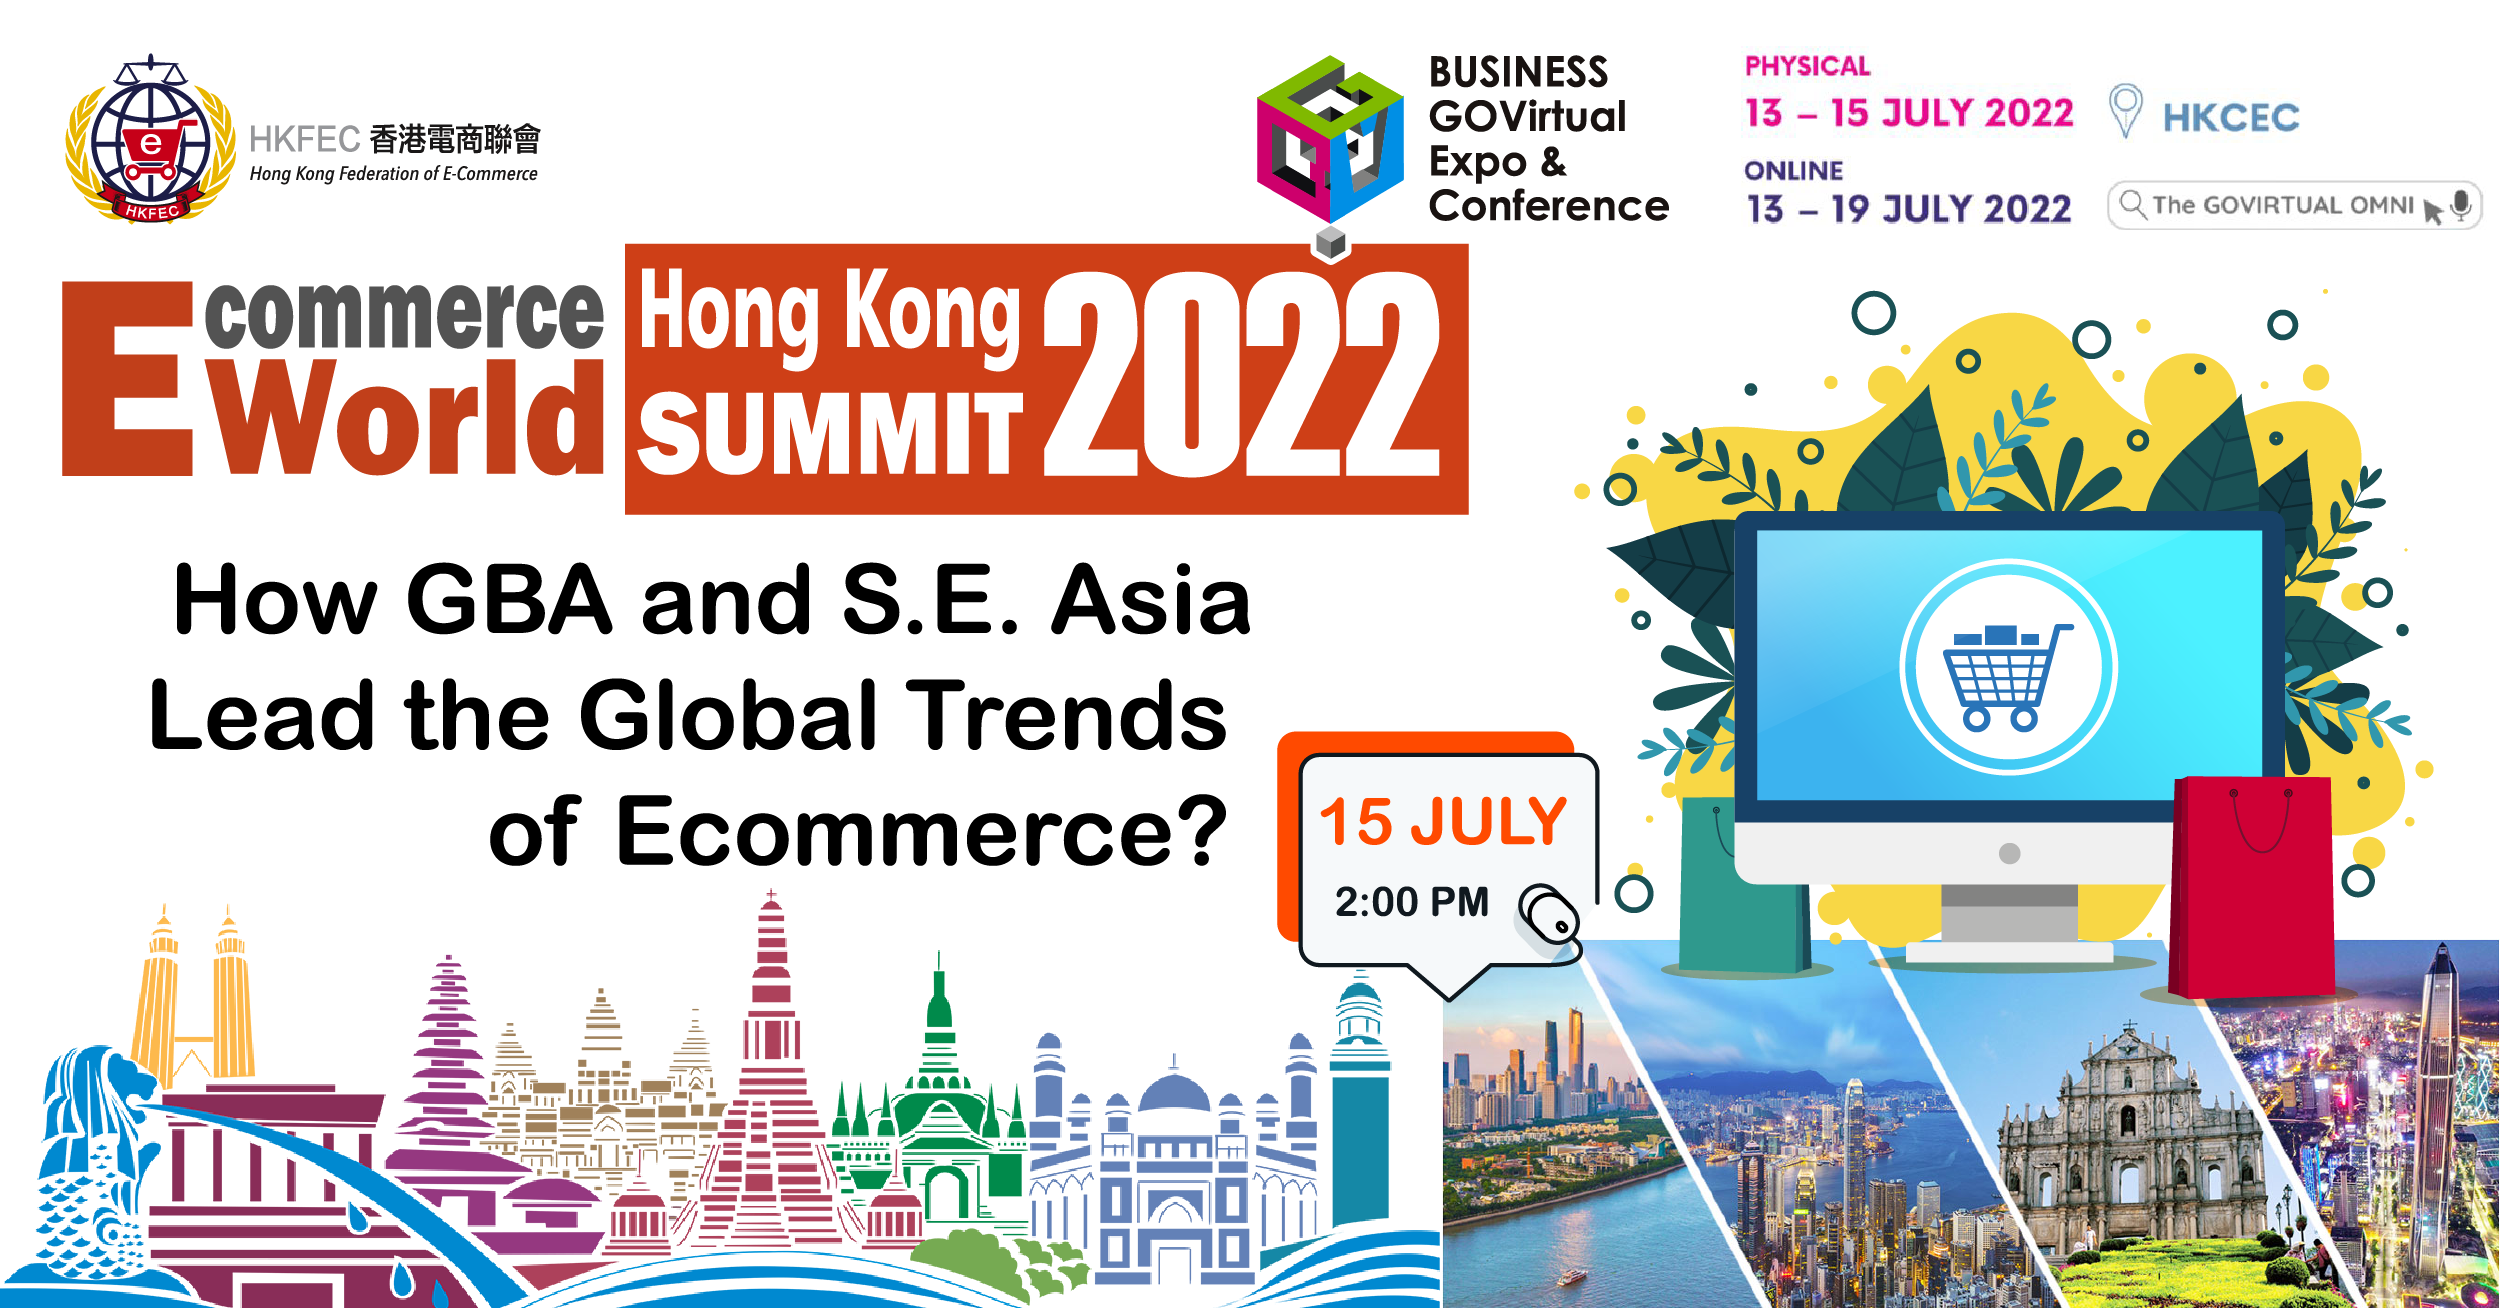 Ecommerce World Summit 2022 – HKFEC